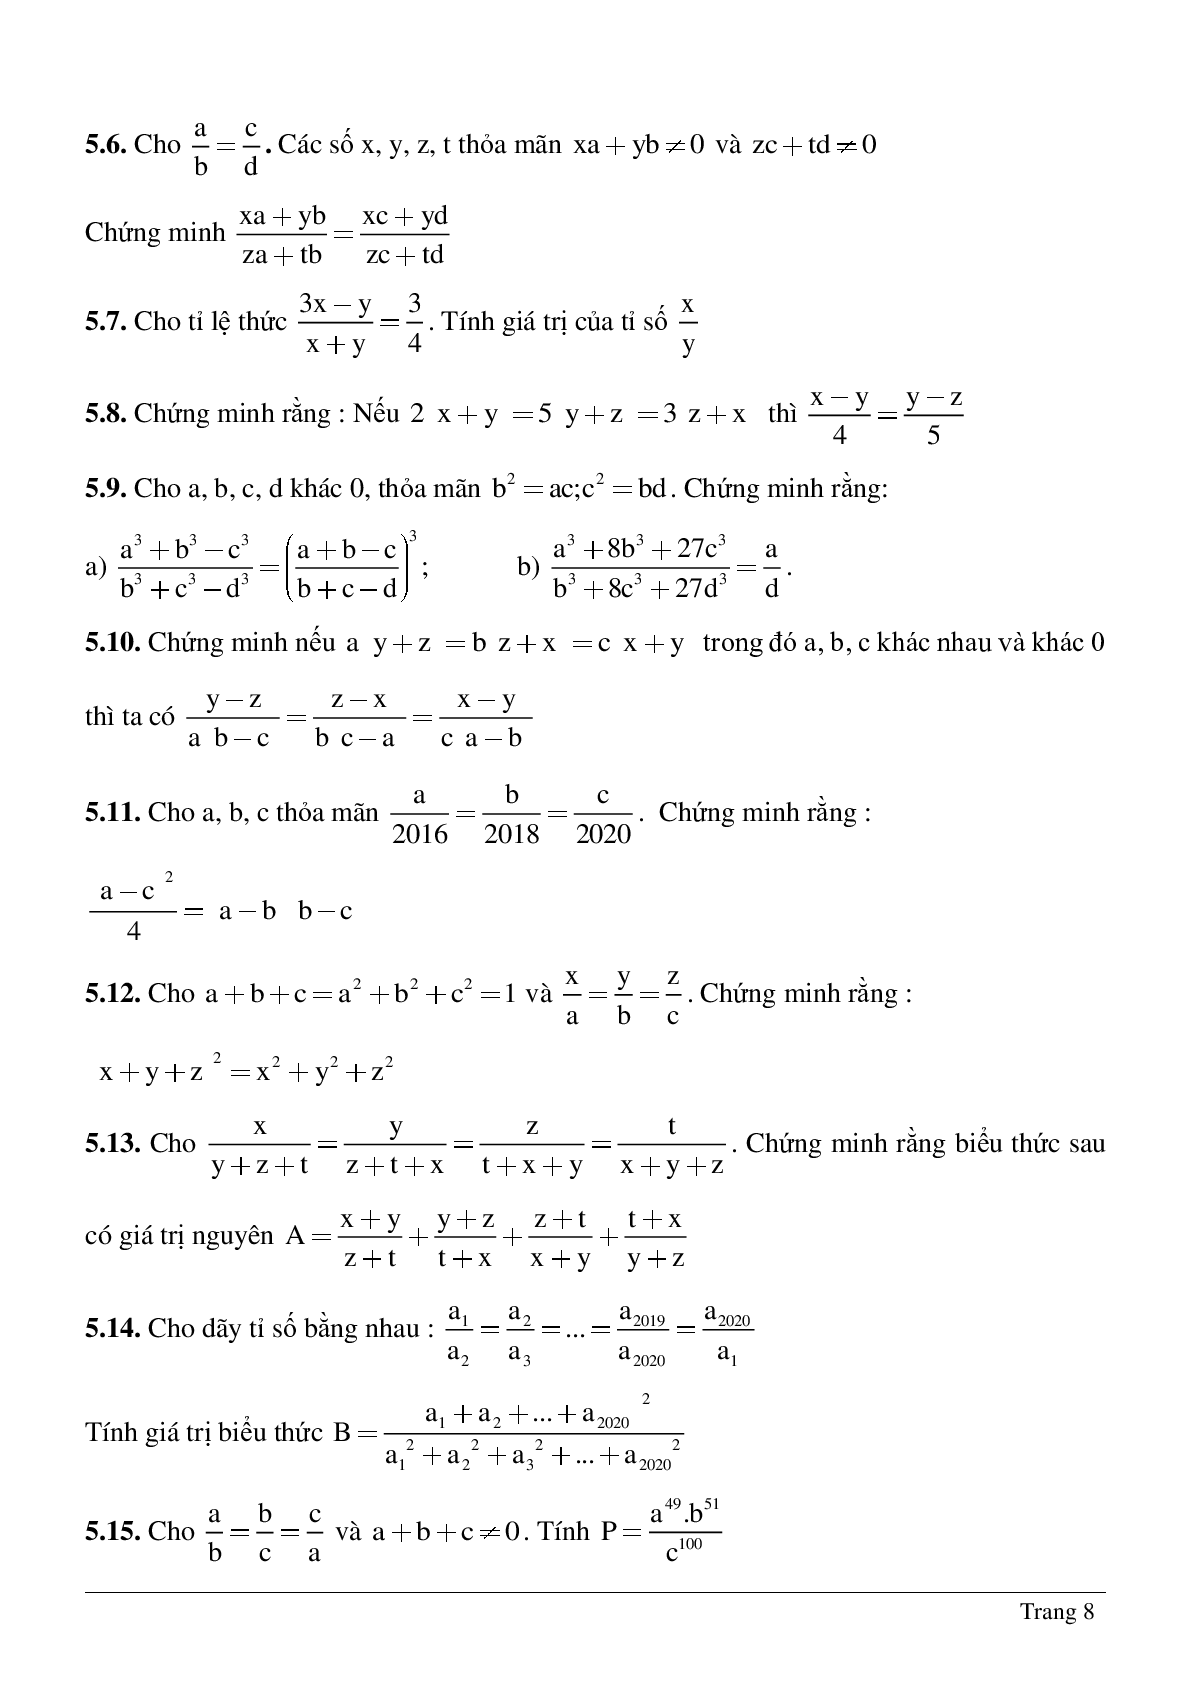 Bài tập chọn lọc về Tỉ lệ thức - Tính chất của dãy tỉ số bằng nhau có lời giải (trang 8)